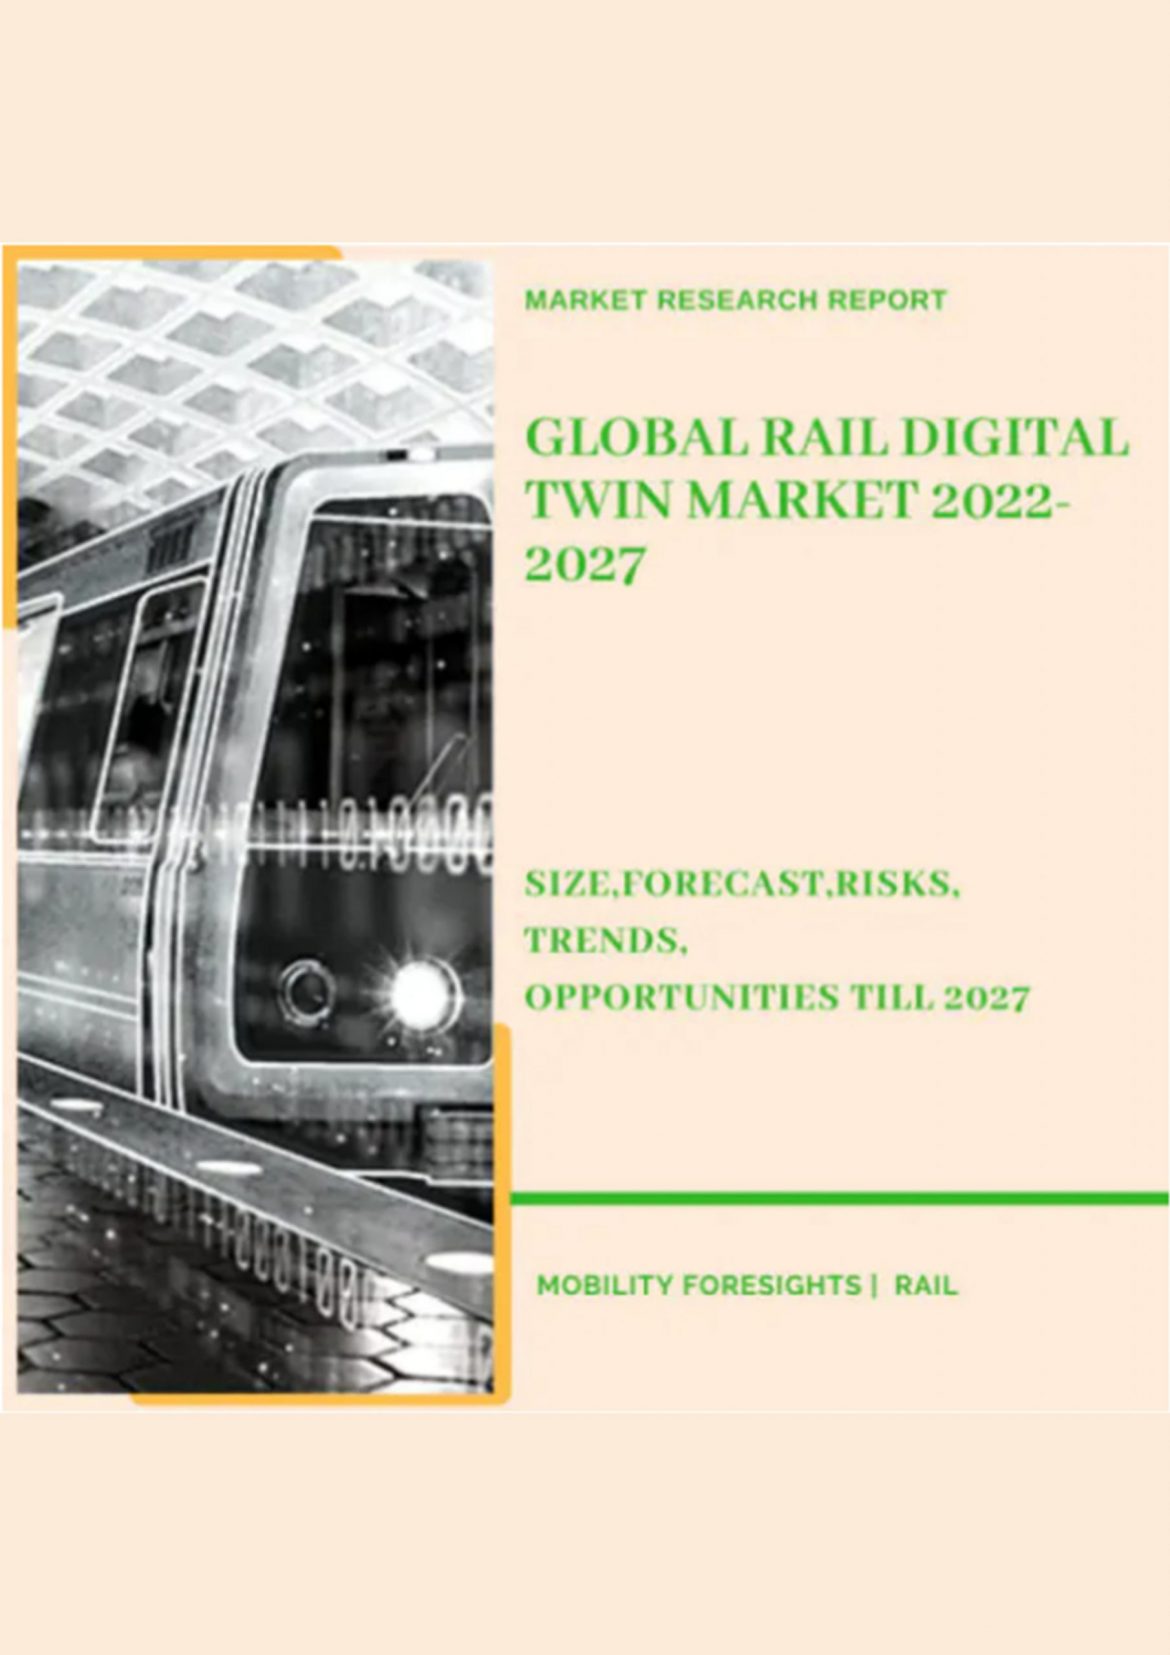 Global Rail Digital Twin Market 2022-2027